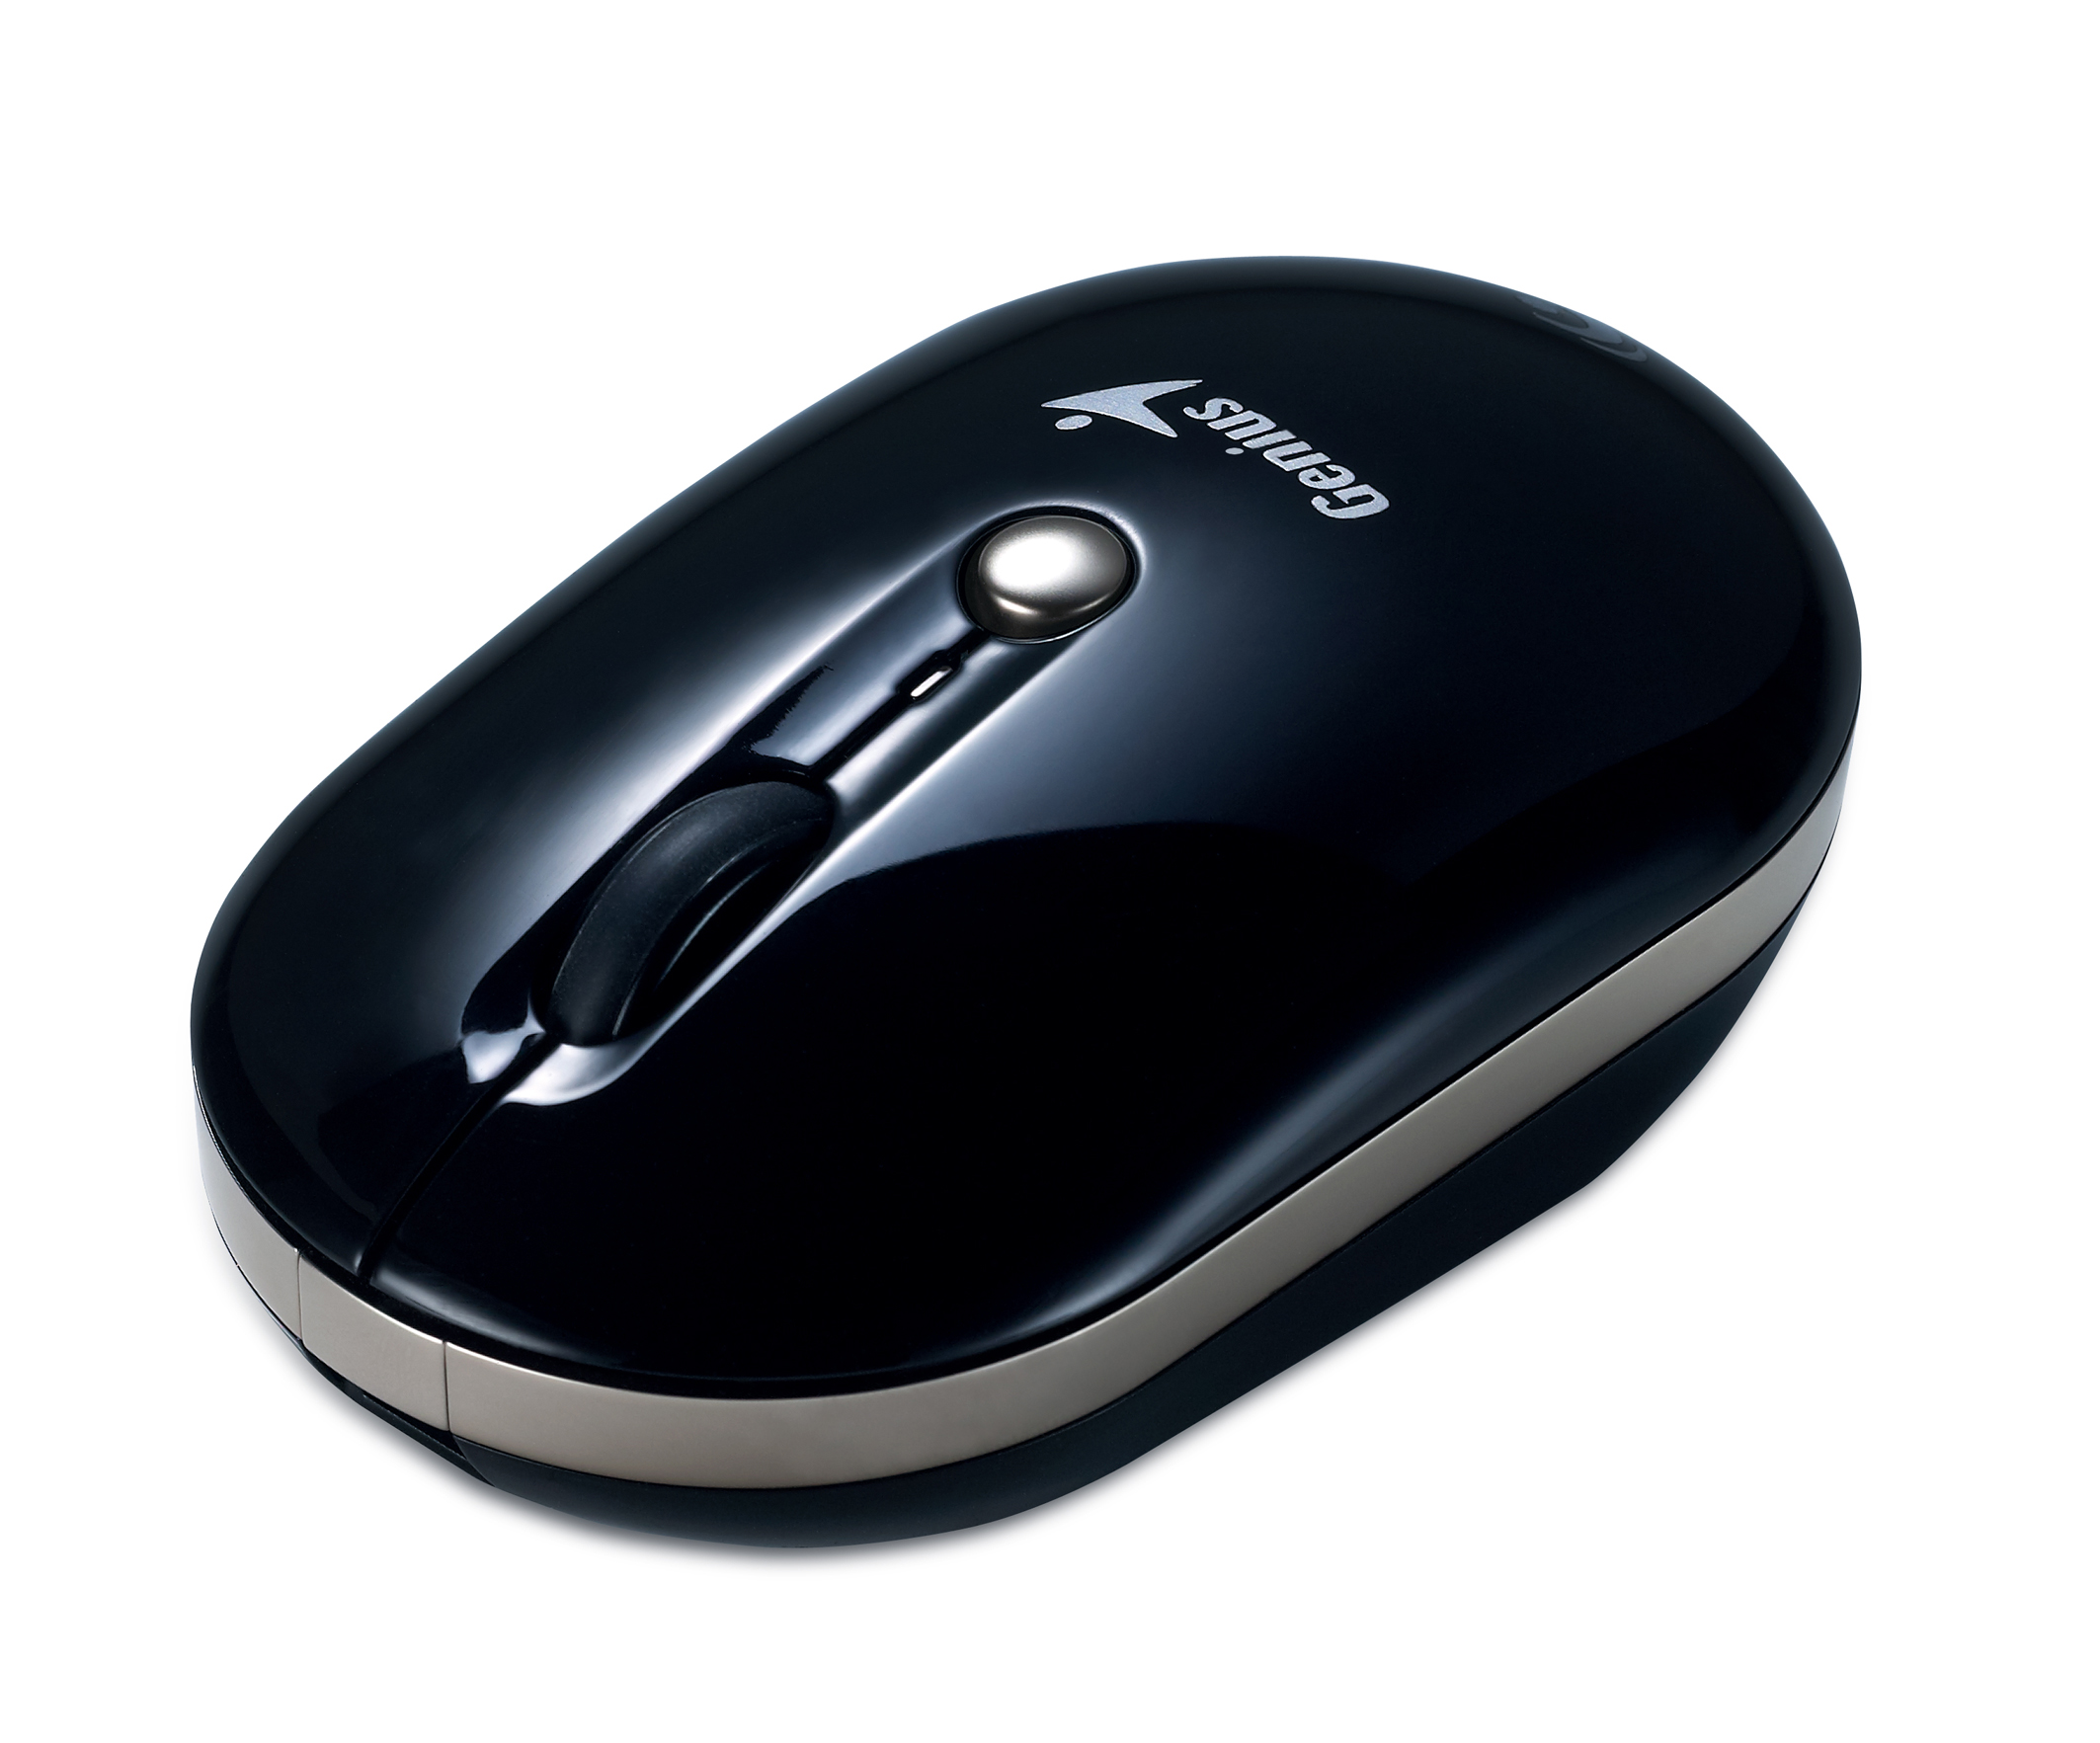  Bezdrátová myš Genius NX-ECO nepotřebuje baterie